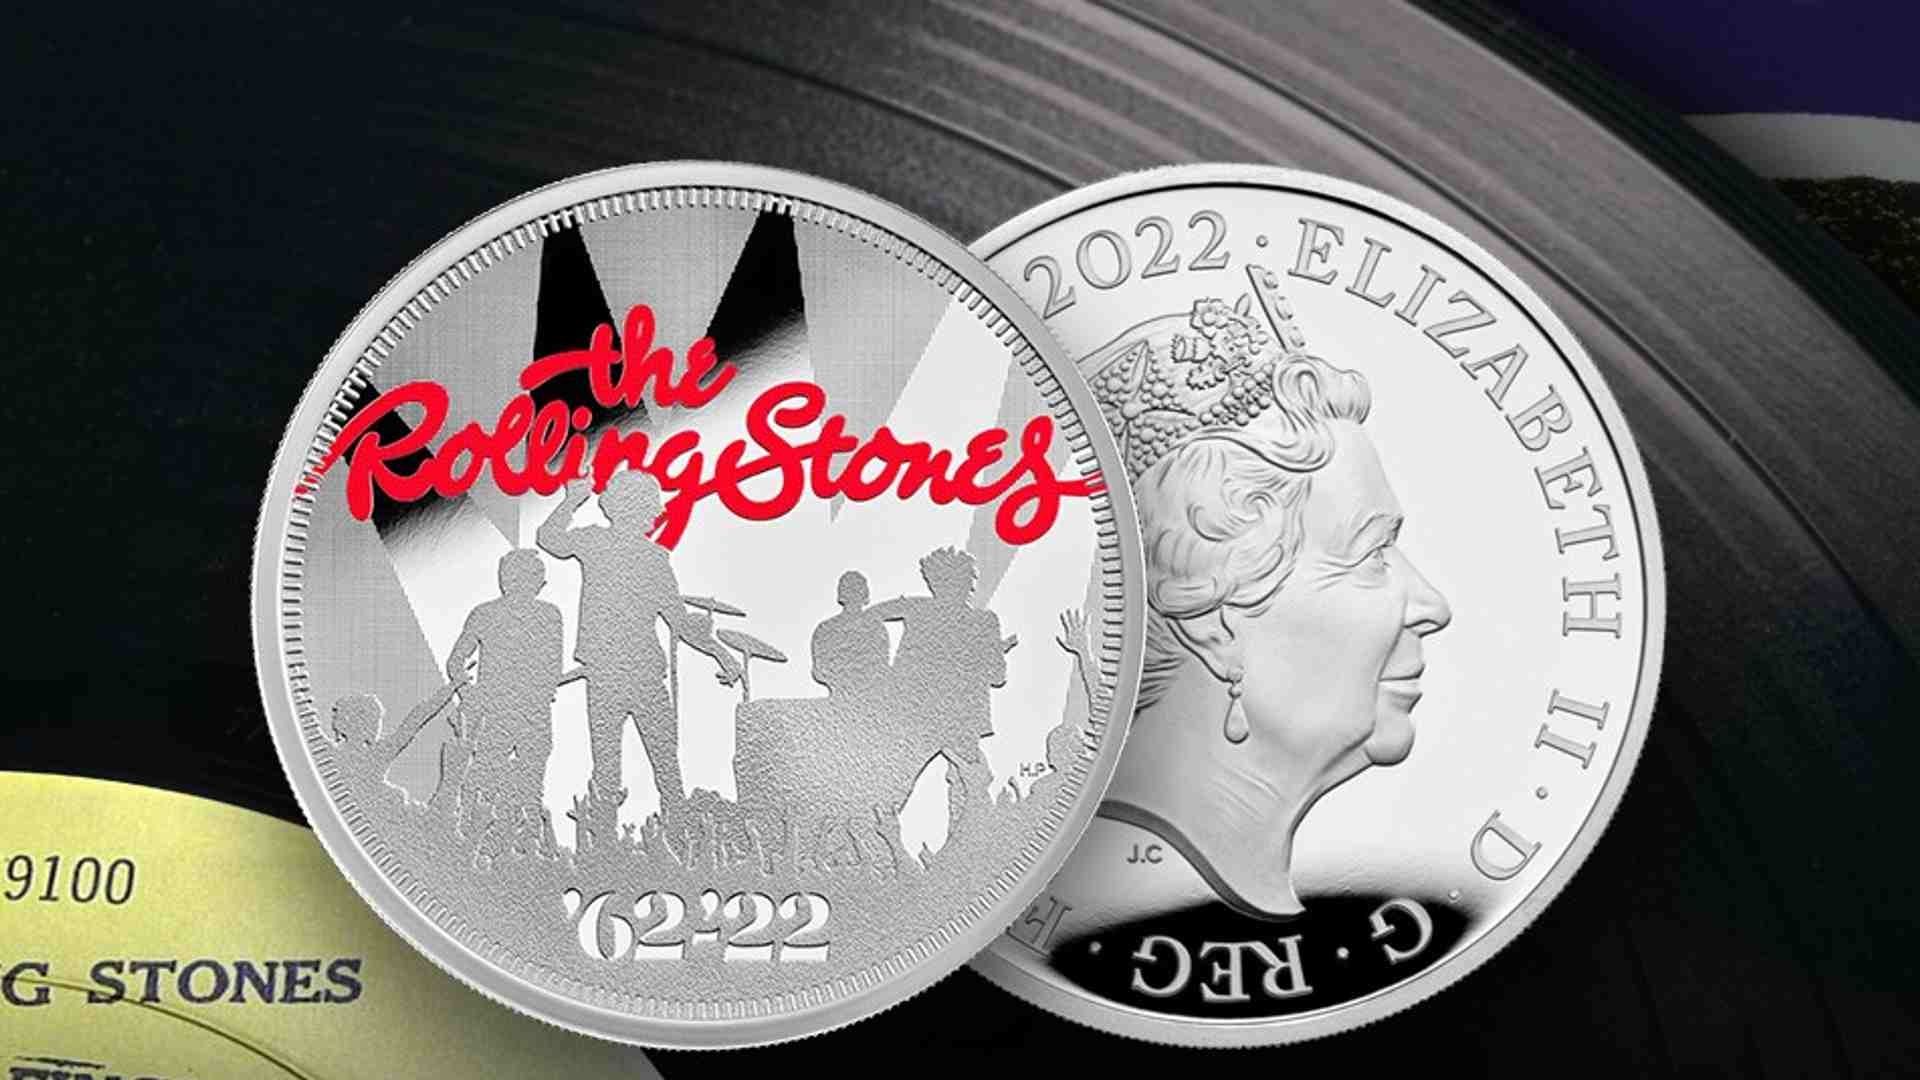 Acuñan moneda de los Rolling Stones